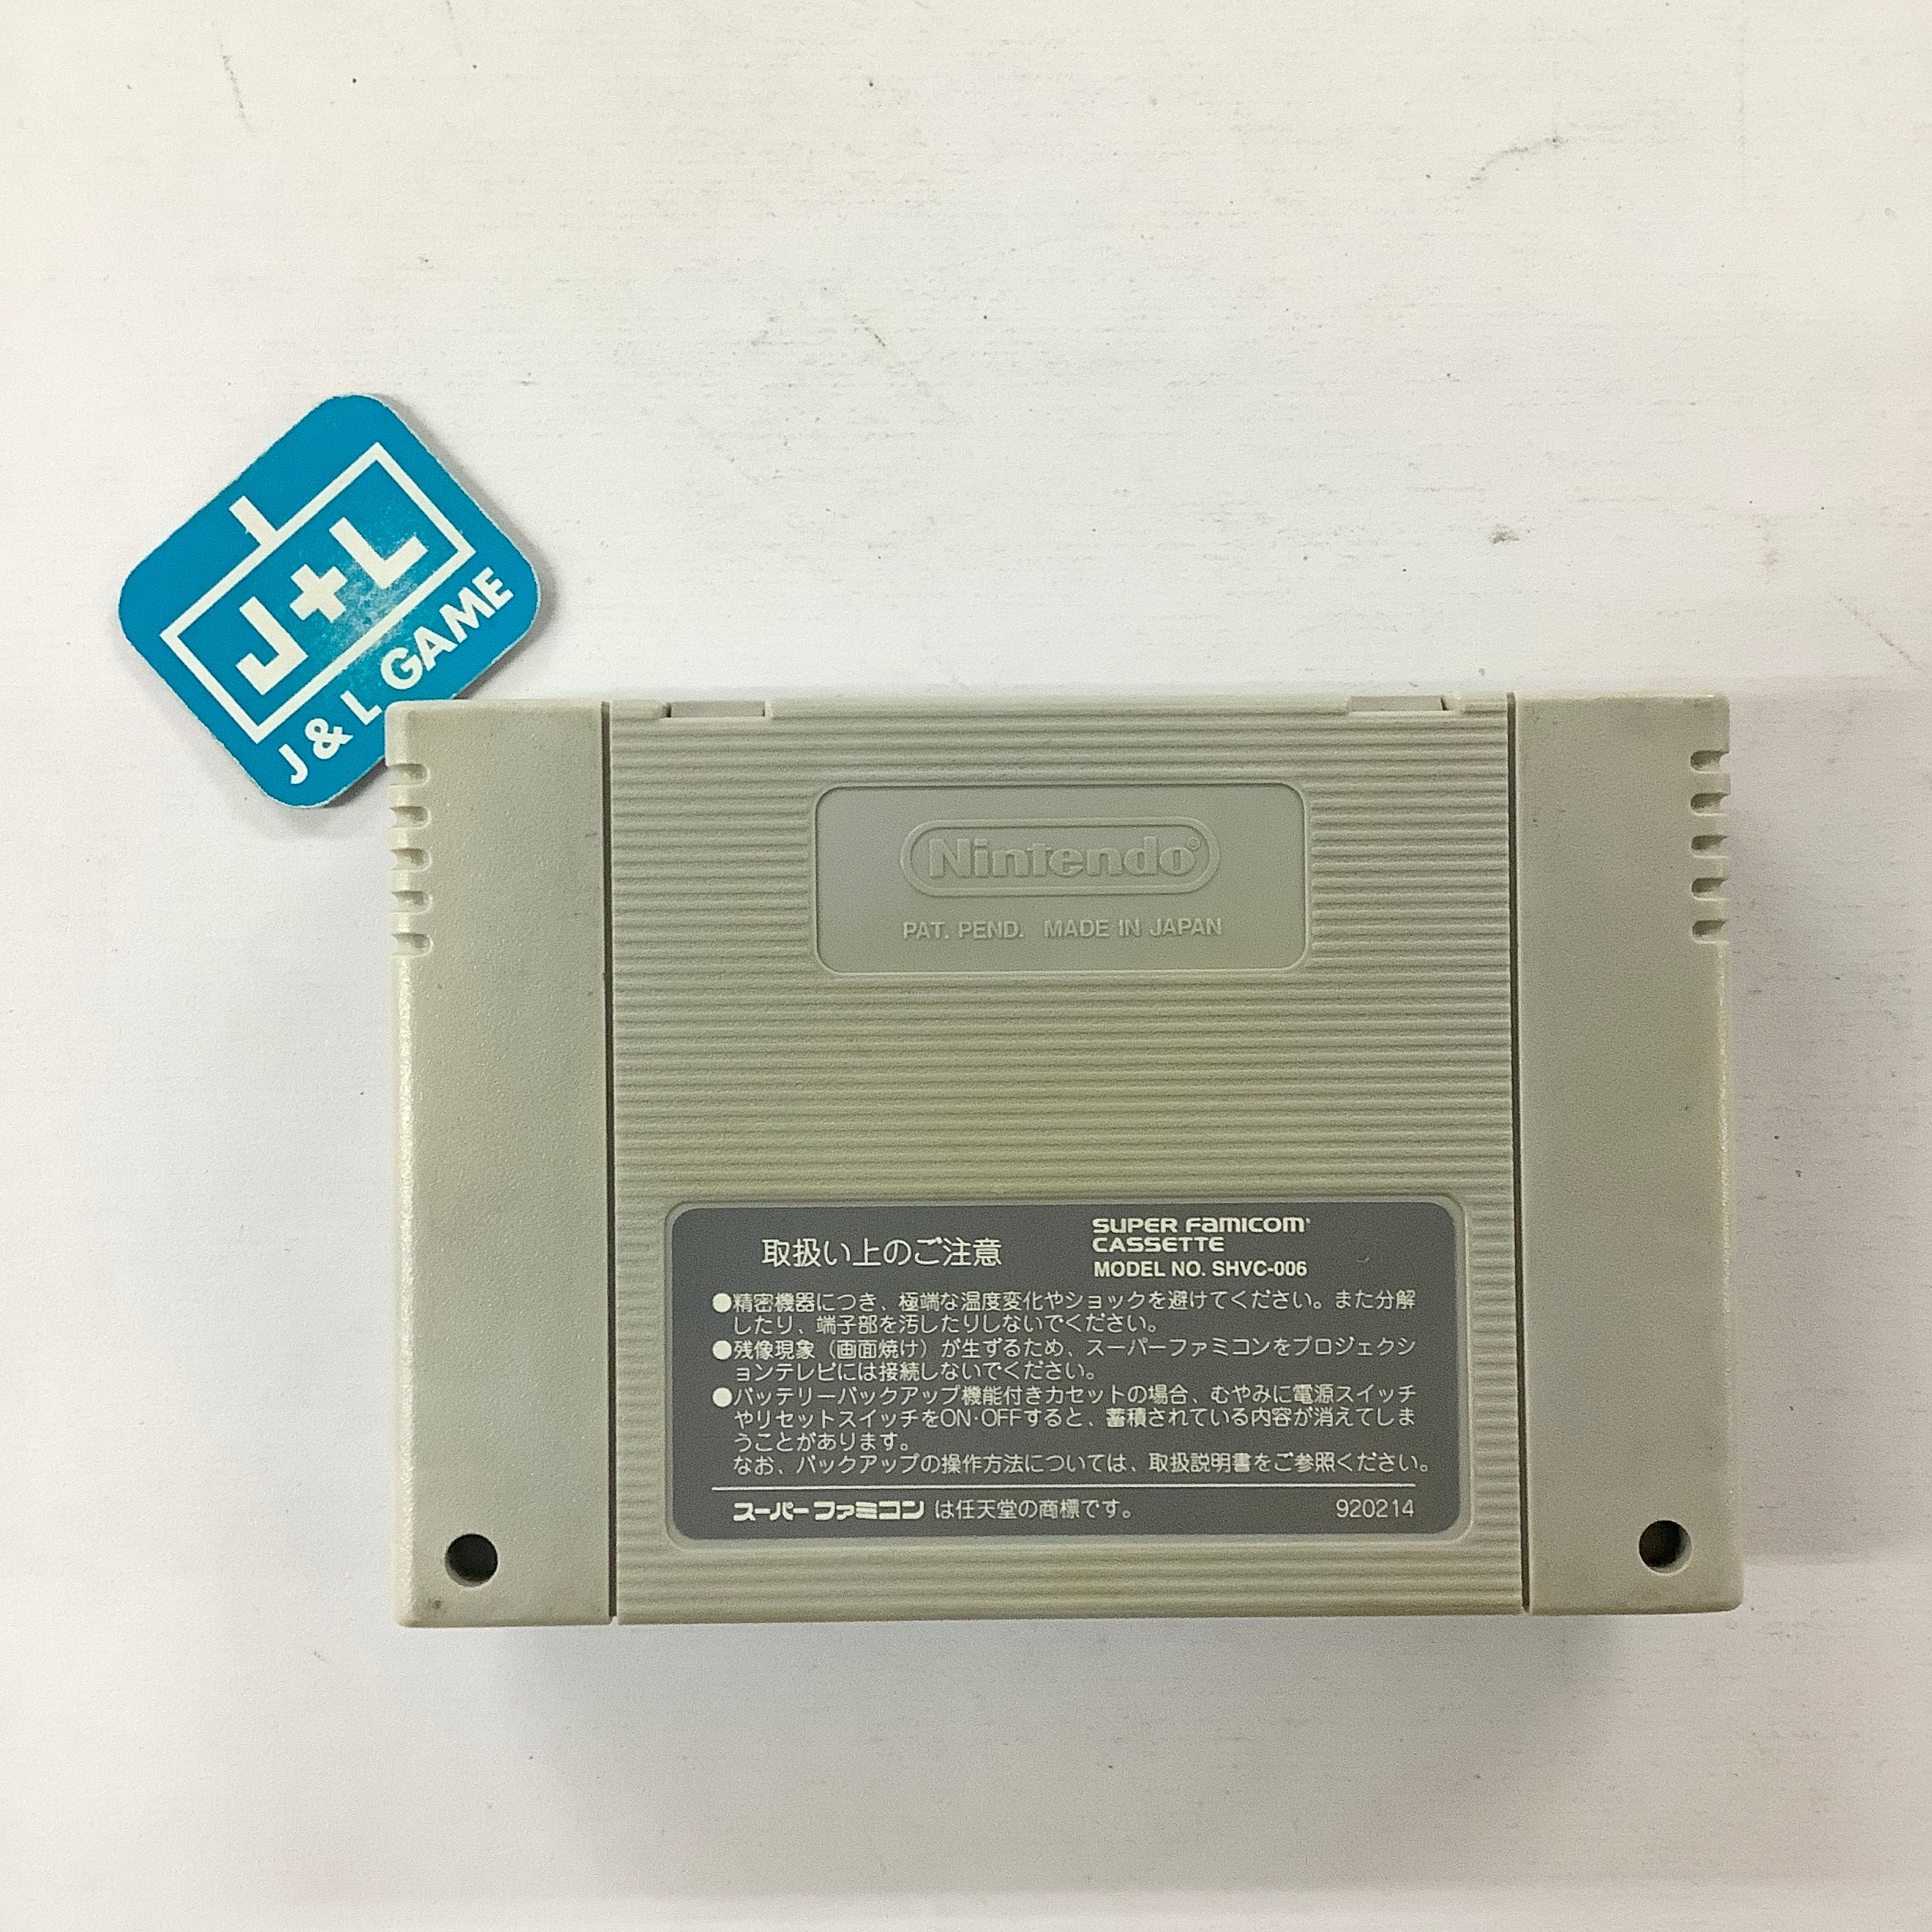 RPG Tsukuru: Super Dante - (SFC) Super Famicom [Pre-Owned] (Japanese Import) Video Games ASCII Entertainment   